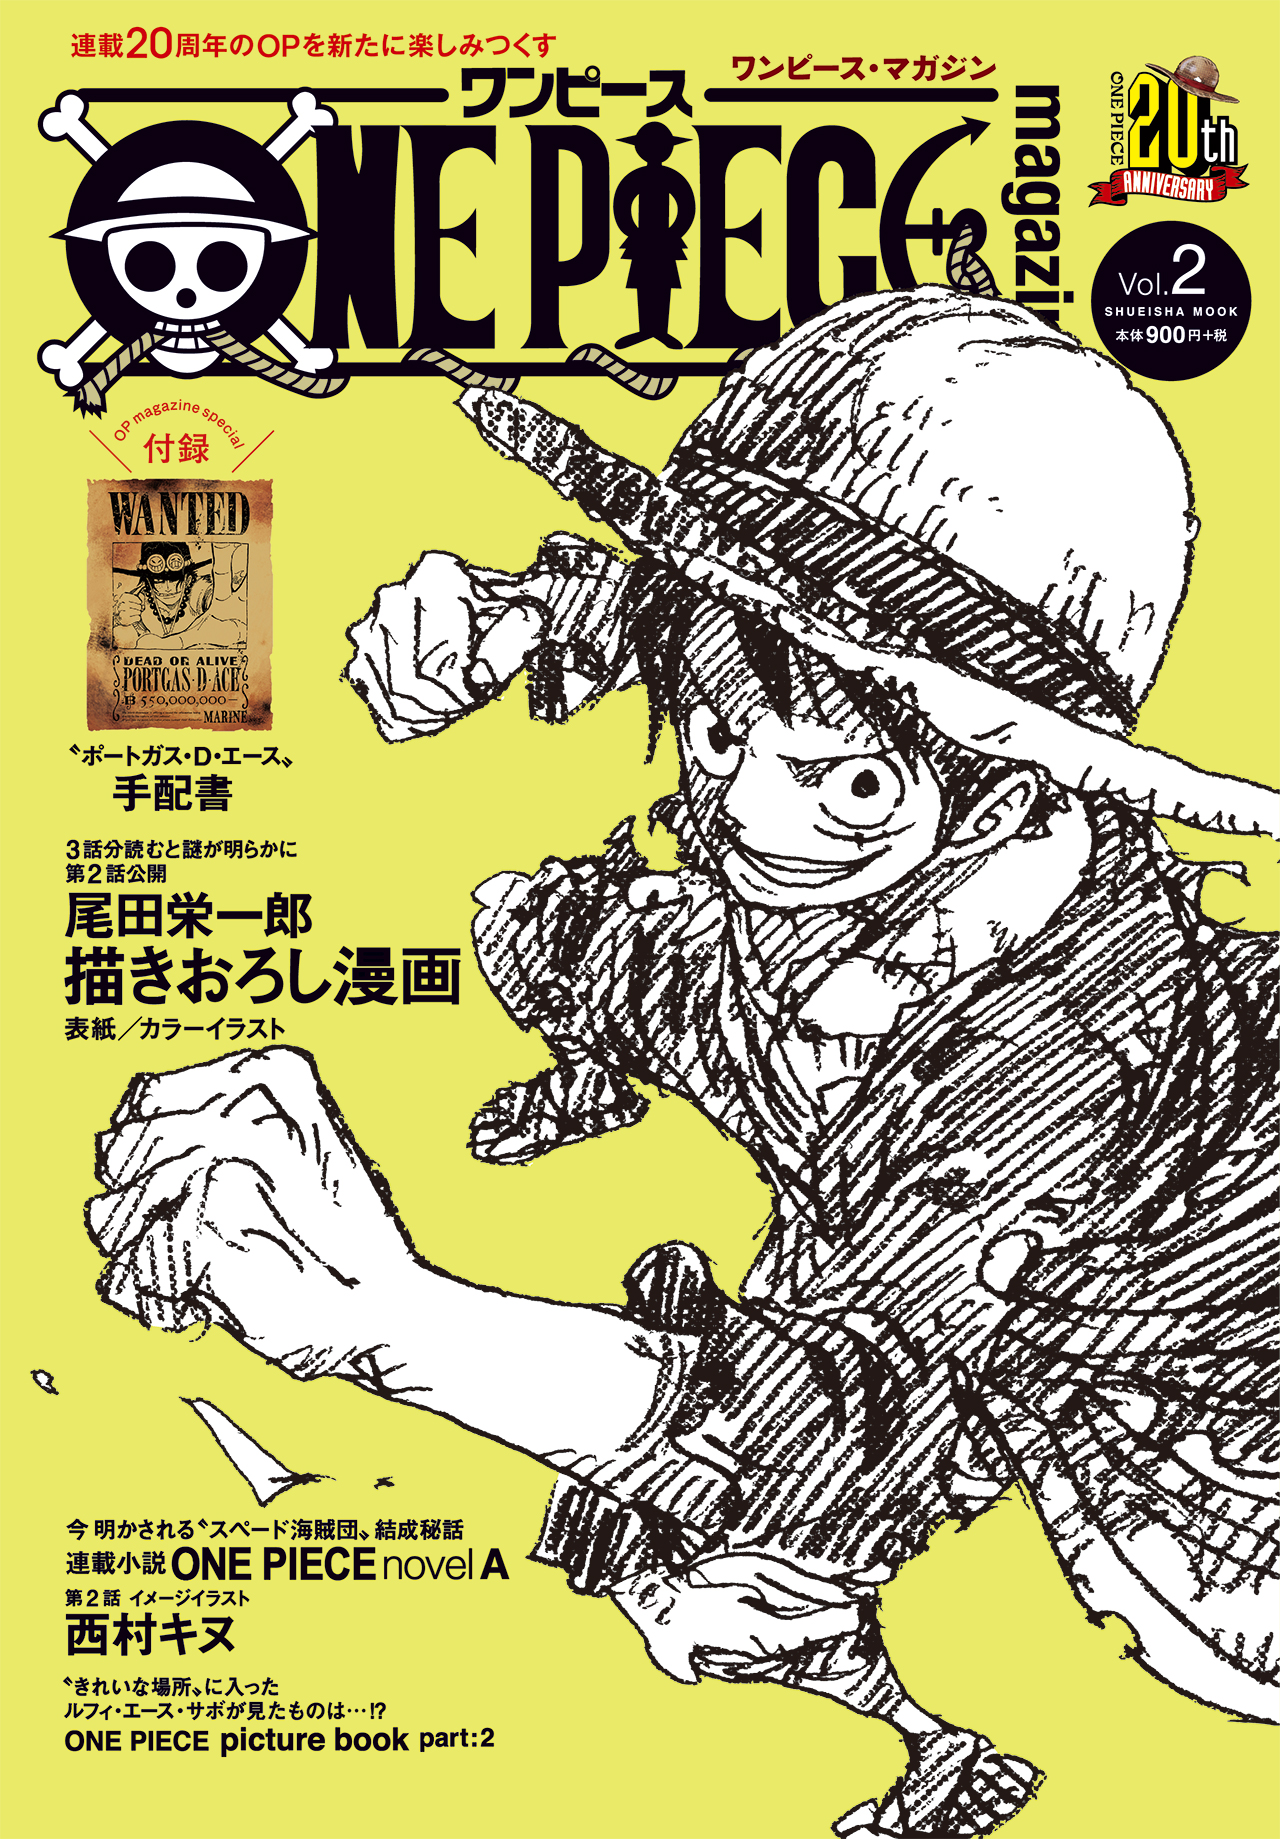 One Piece Magazine Vol.2 | One Piece Wiki | Fandom